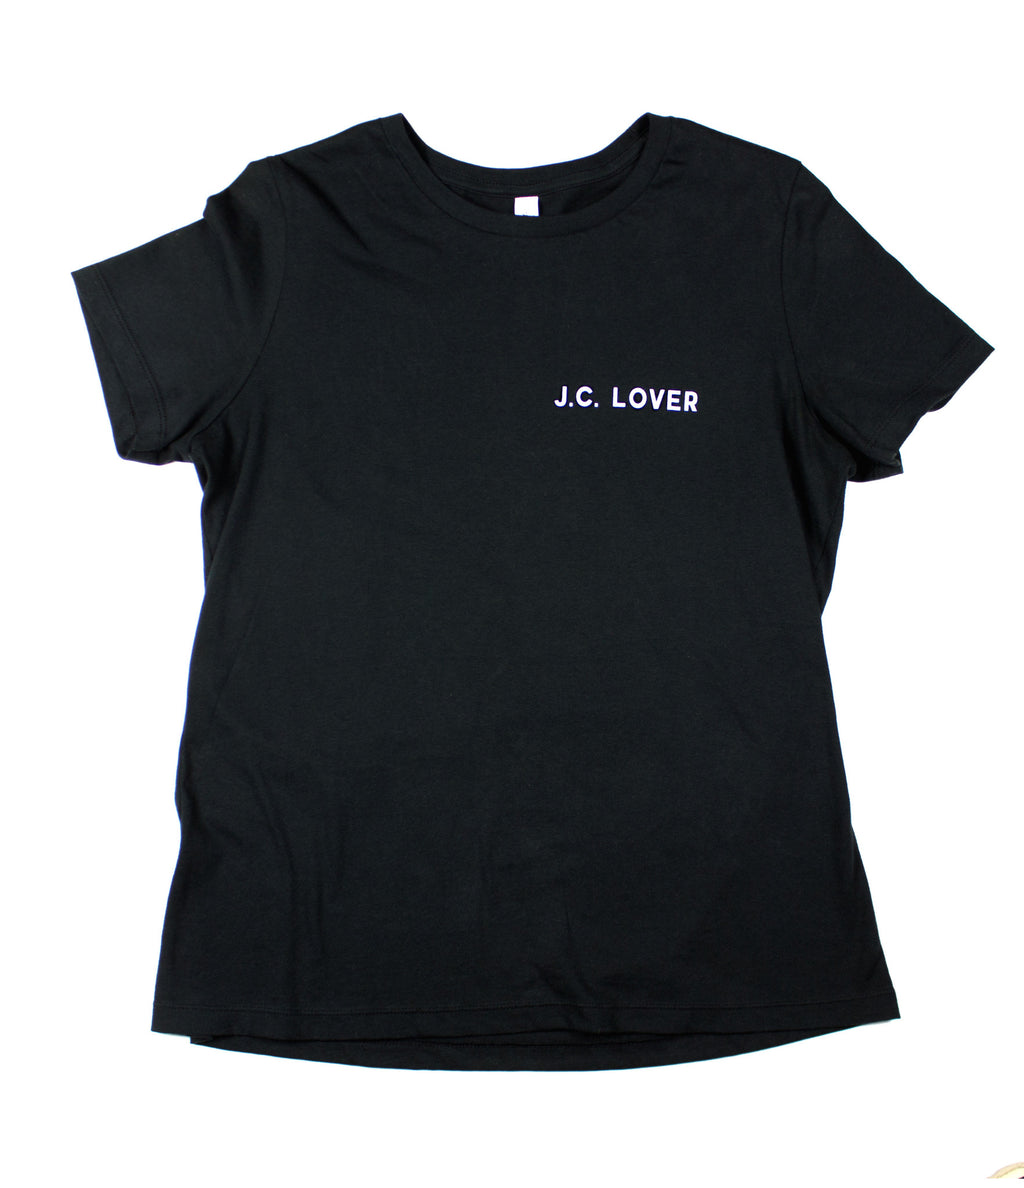 J.C. LOVER BLACK WOMEN'S RELAXED T-SHIRT